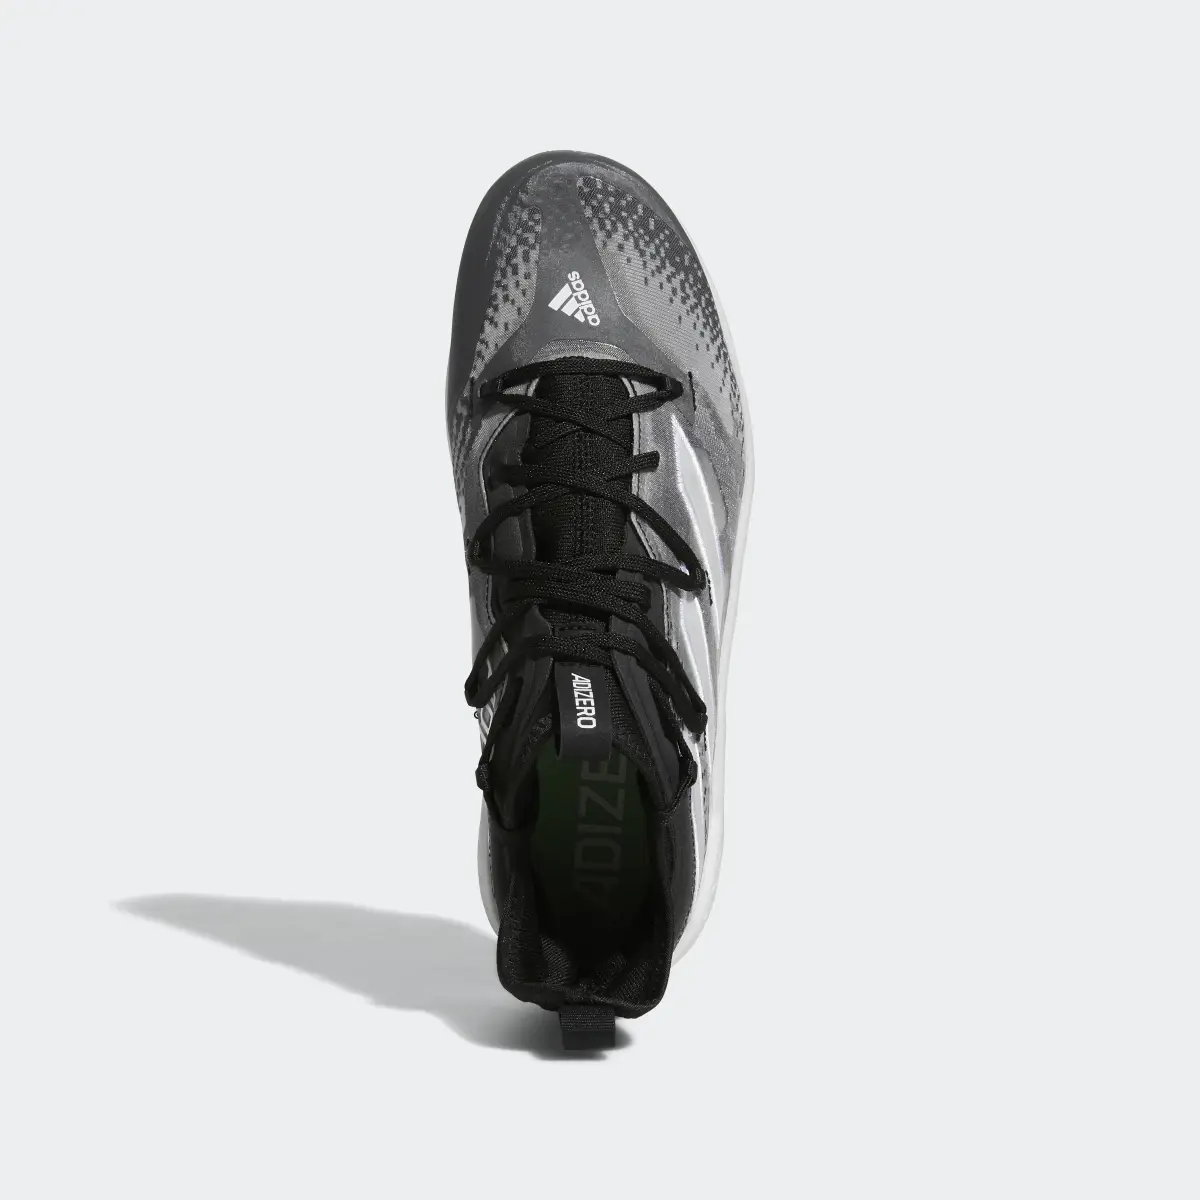 Adidas Adizero Afterburner NWV Cleats. 3